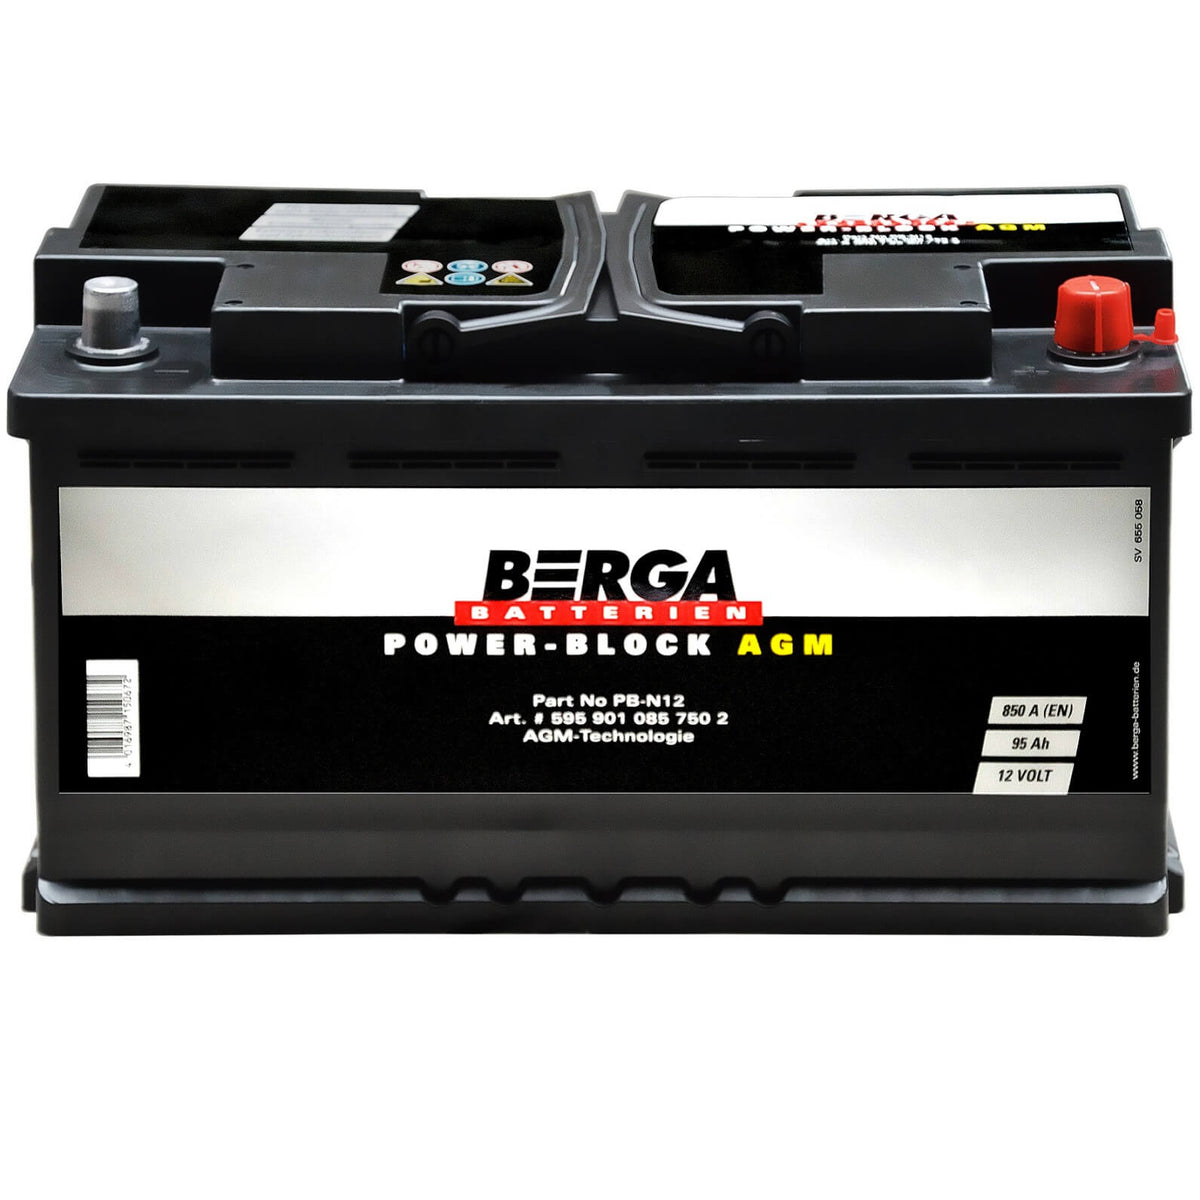 BERGA POWER-BLOCK AGM 12V 95Ah 850A/EN